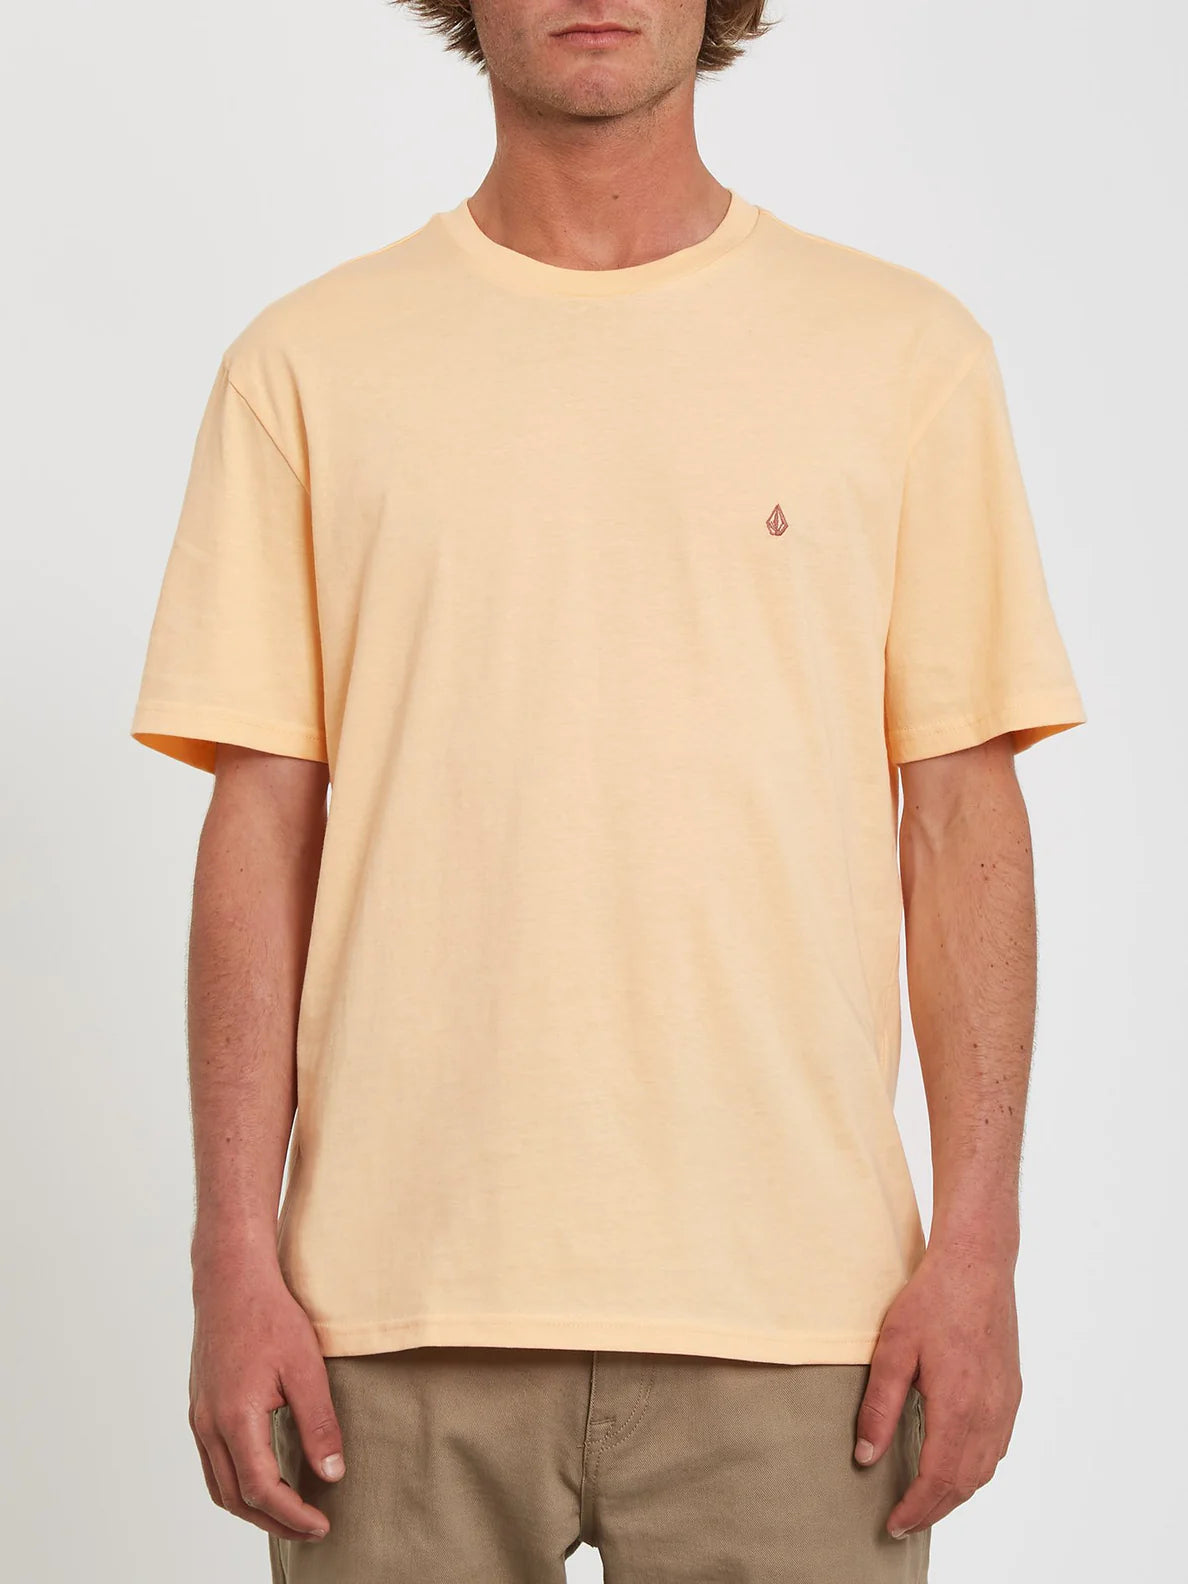 Camiseta Volcom Solid Stone Cream Blush | surfdevils.com